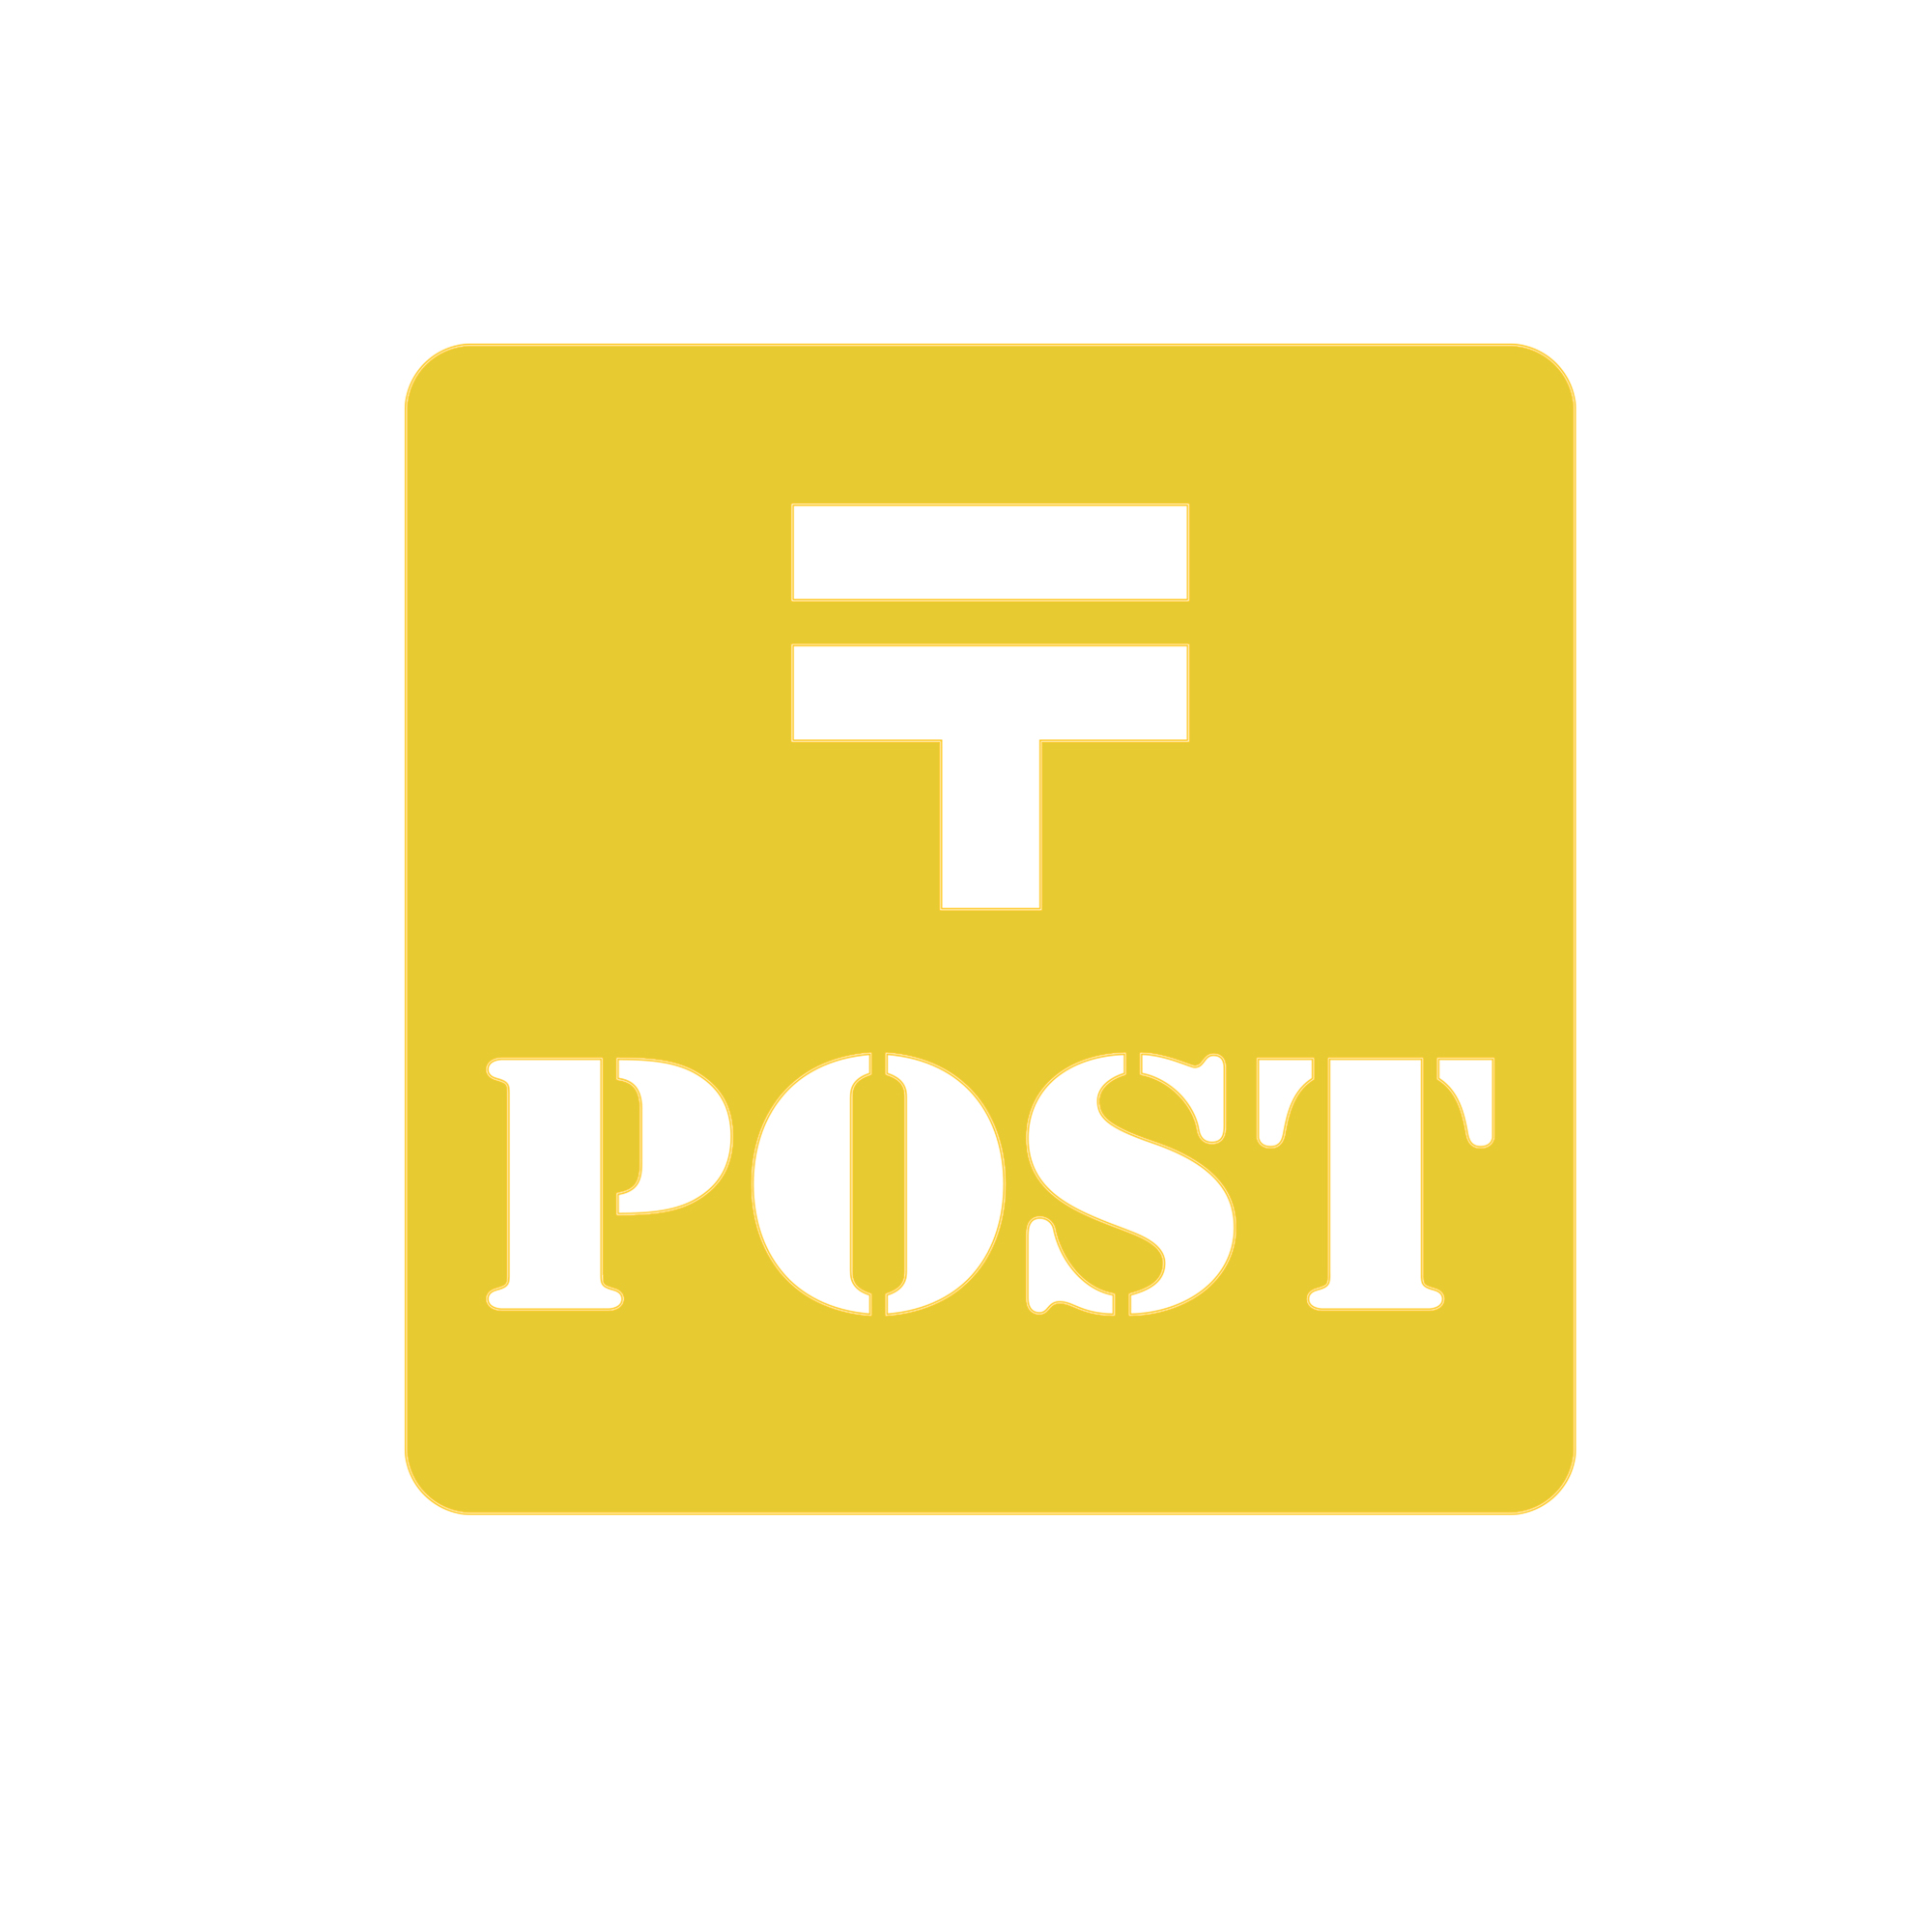 郵便 ポスト POST ステッカー シール シンプル 案内 正方形 小さい ステッカーシール カッテ...